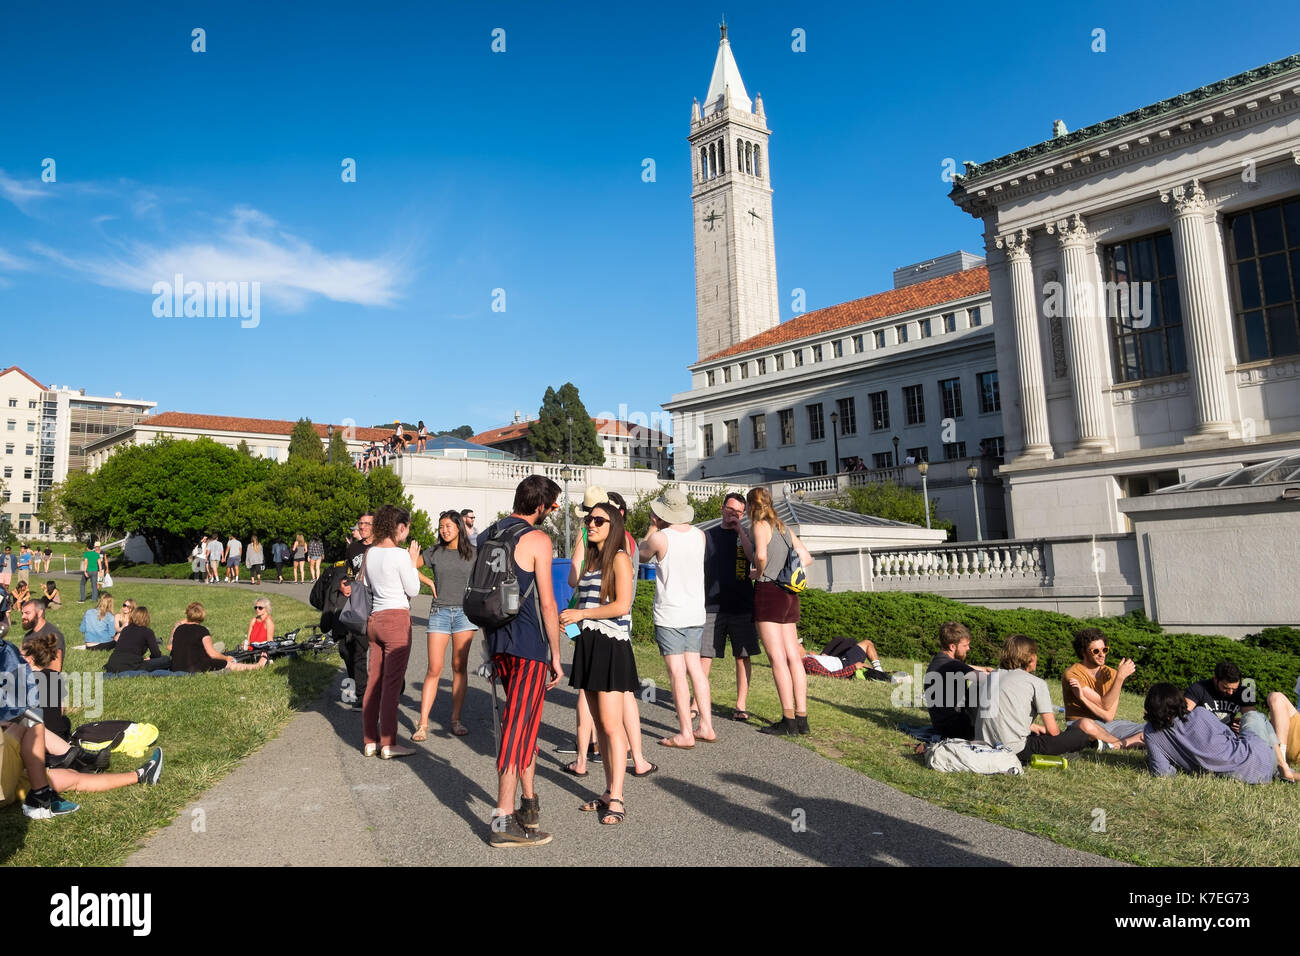 Studenti presso l'Università della California Berkeley campus godendo di una calda giornata di primavera all'aperto sull'erba. La torre del campanile è in background Foto Stock